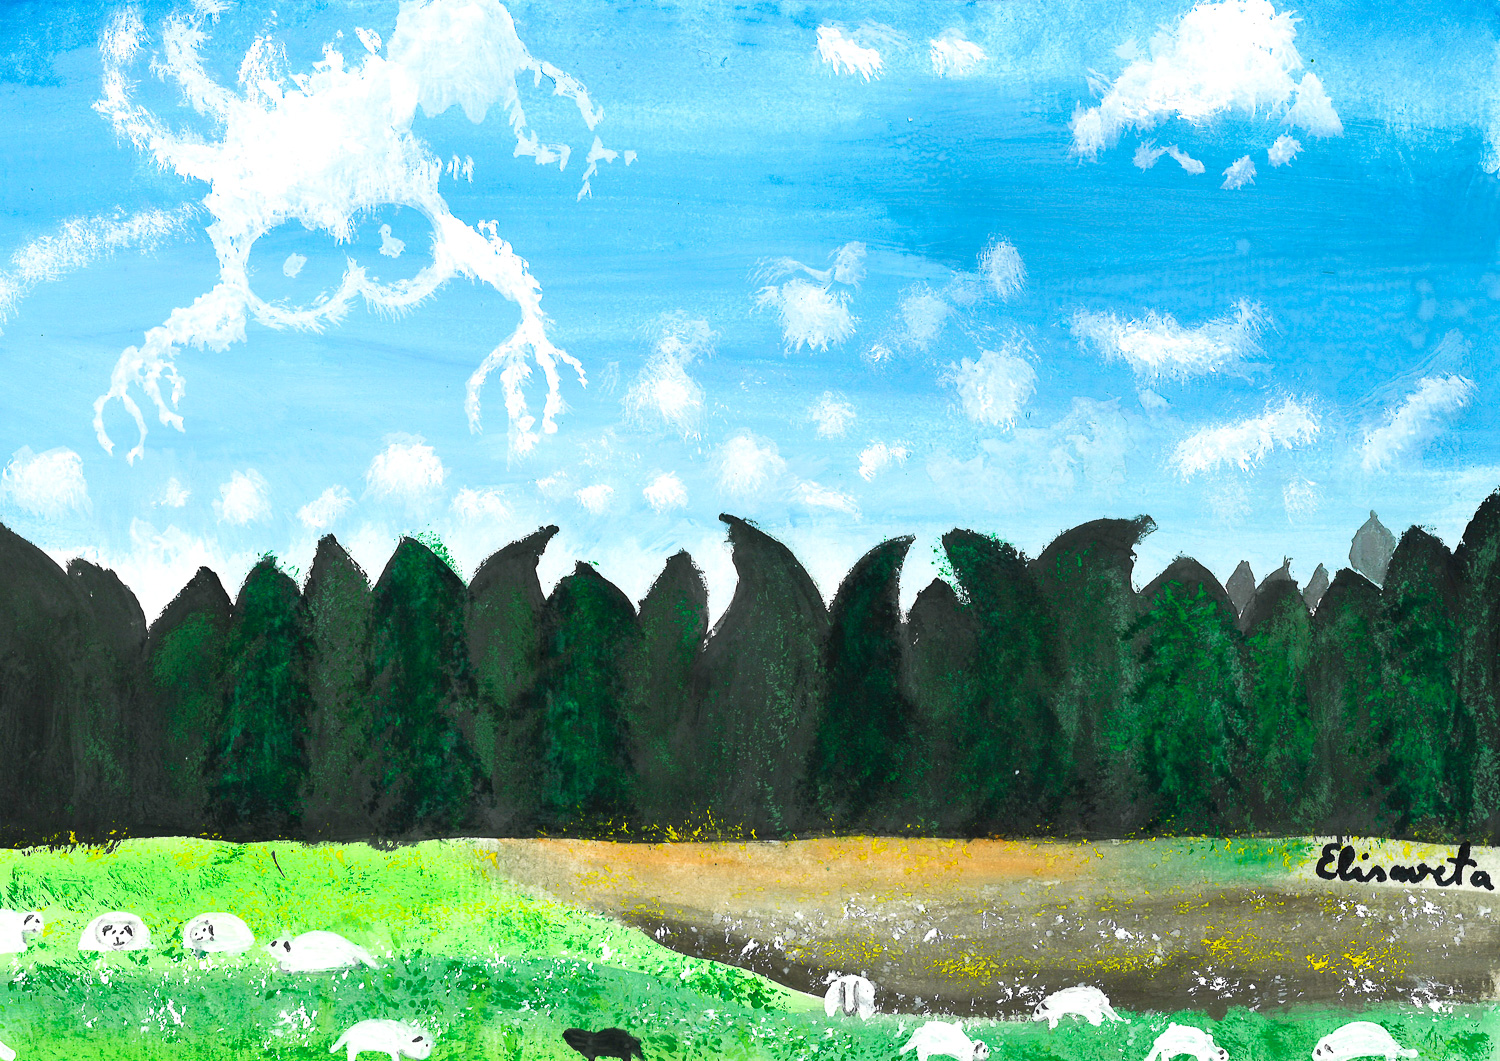 Navitrolla maali "14 lolli lammast ja 1 tark pilv" jäljendamine. / Elisaveta Sipelgas, 7.b klass